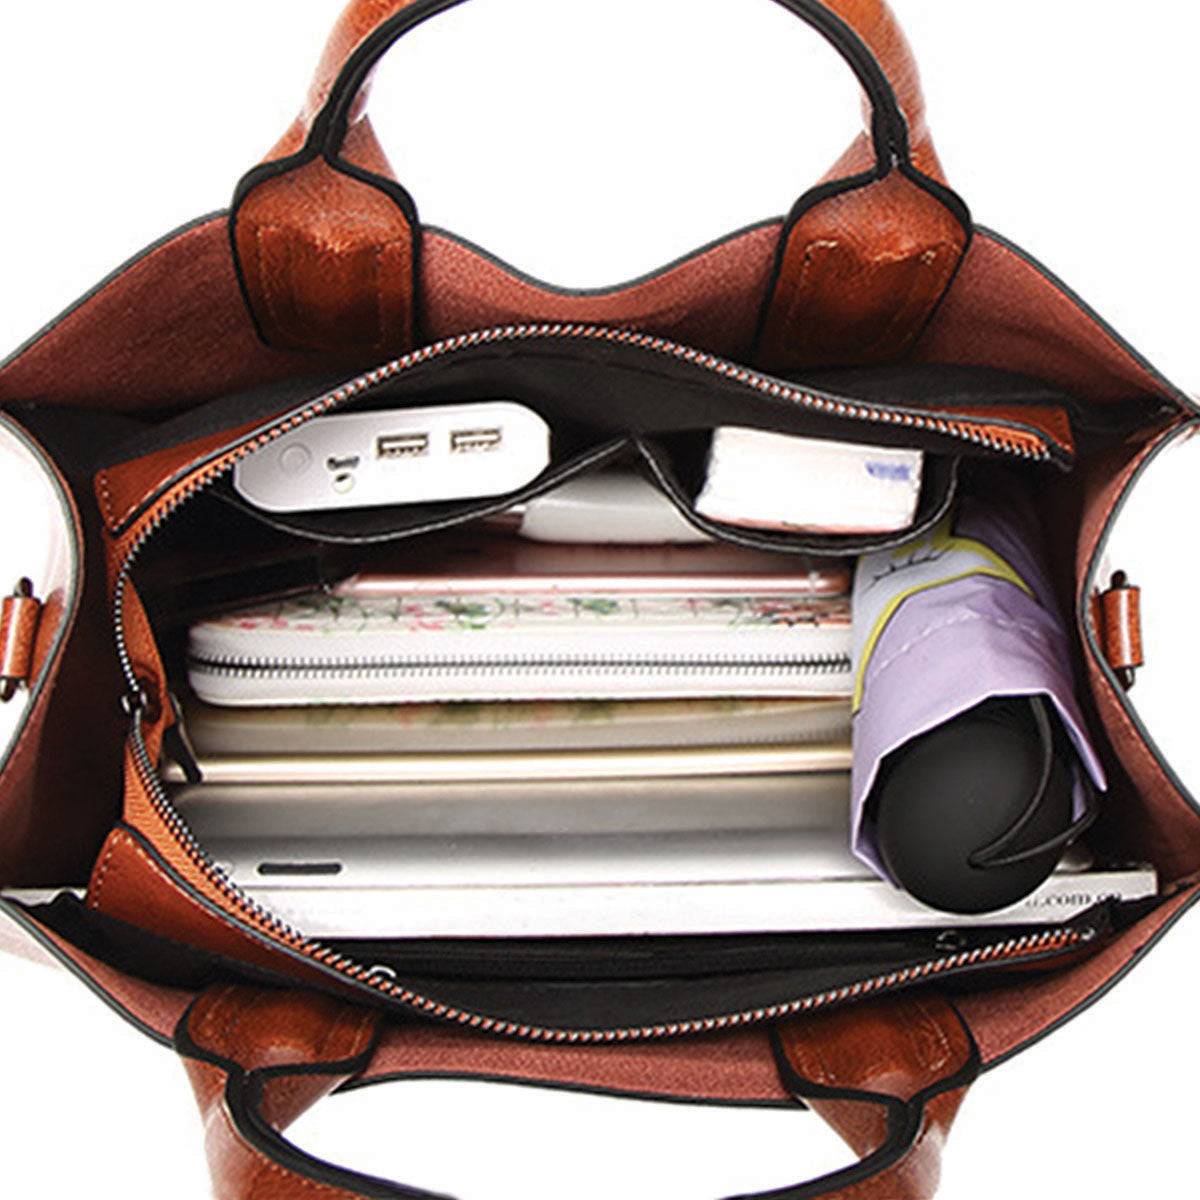 Ihr bester Begleiter – Zwergpinscher Luxus-Handtasche V3